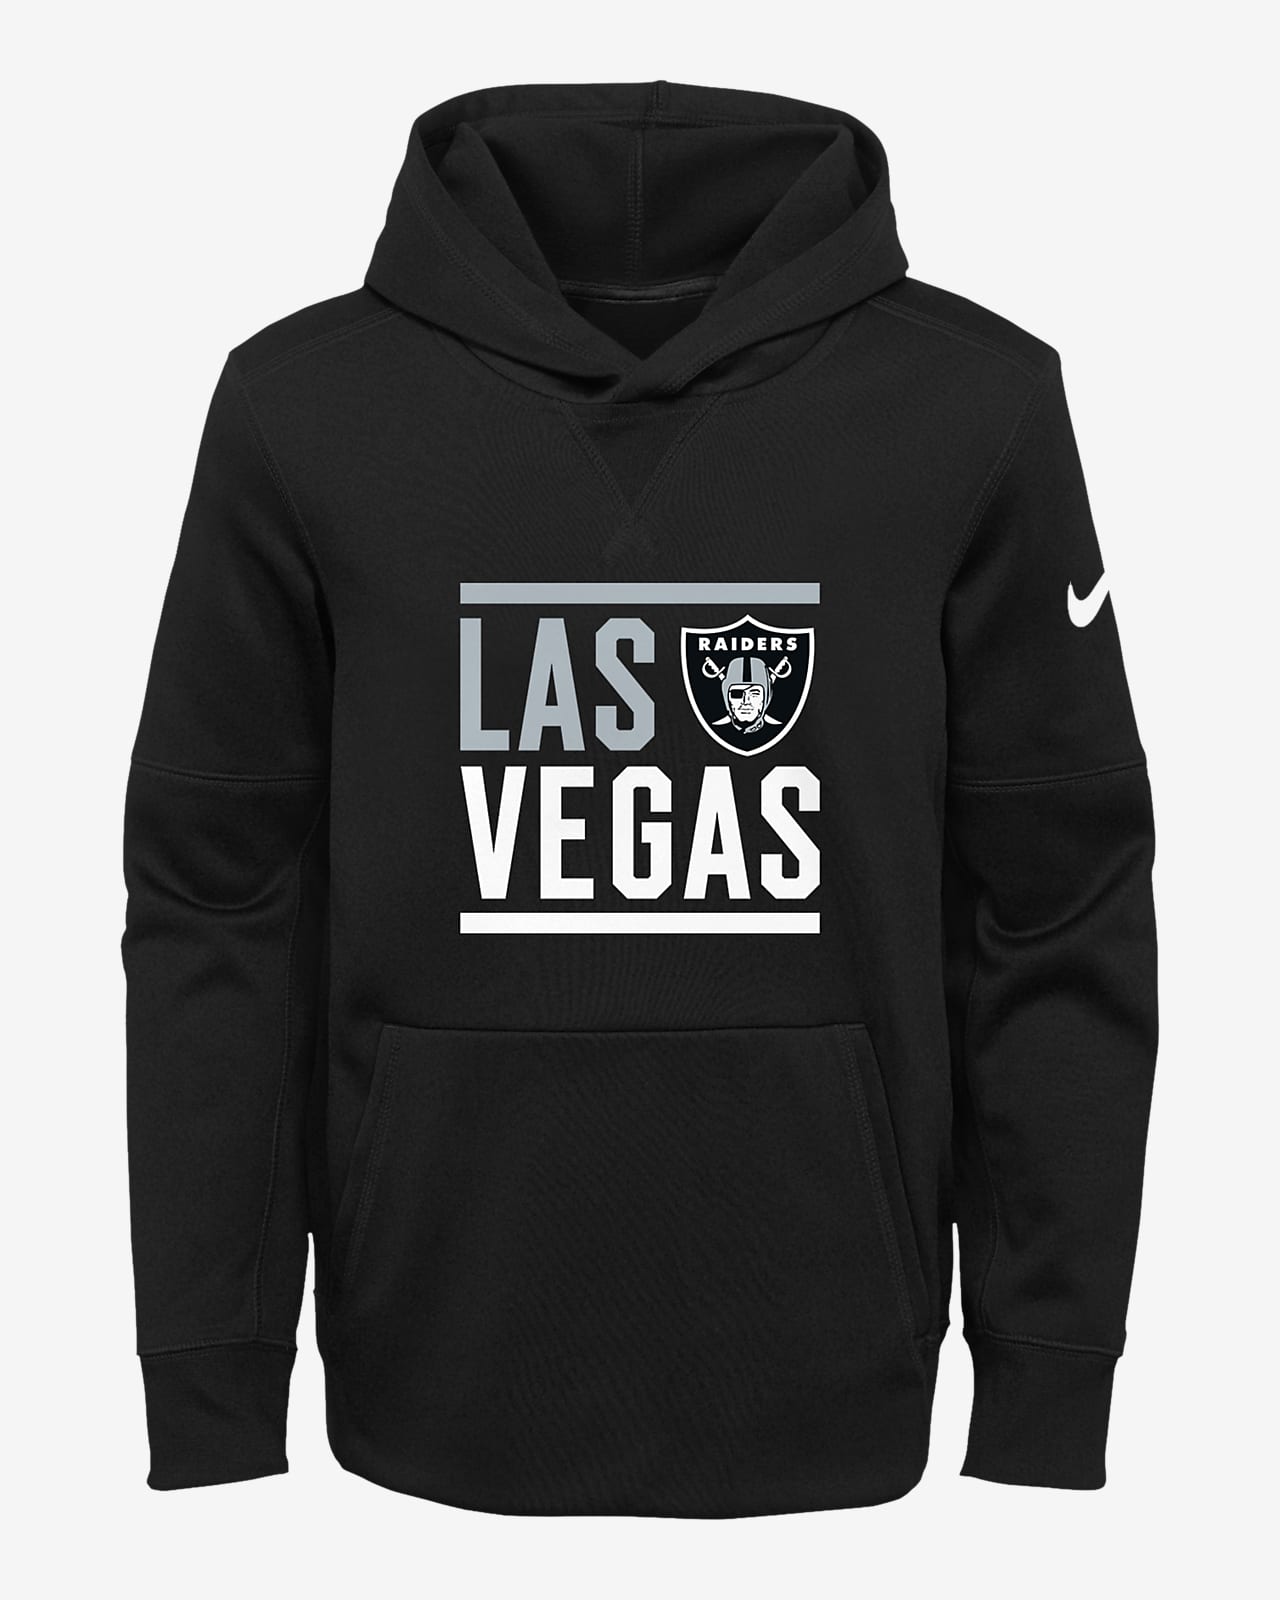 herder genie Collectief Las Vegas Raiders Nike Hoodie Flash Sales, SAVE 45% - icarus.photos